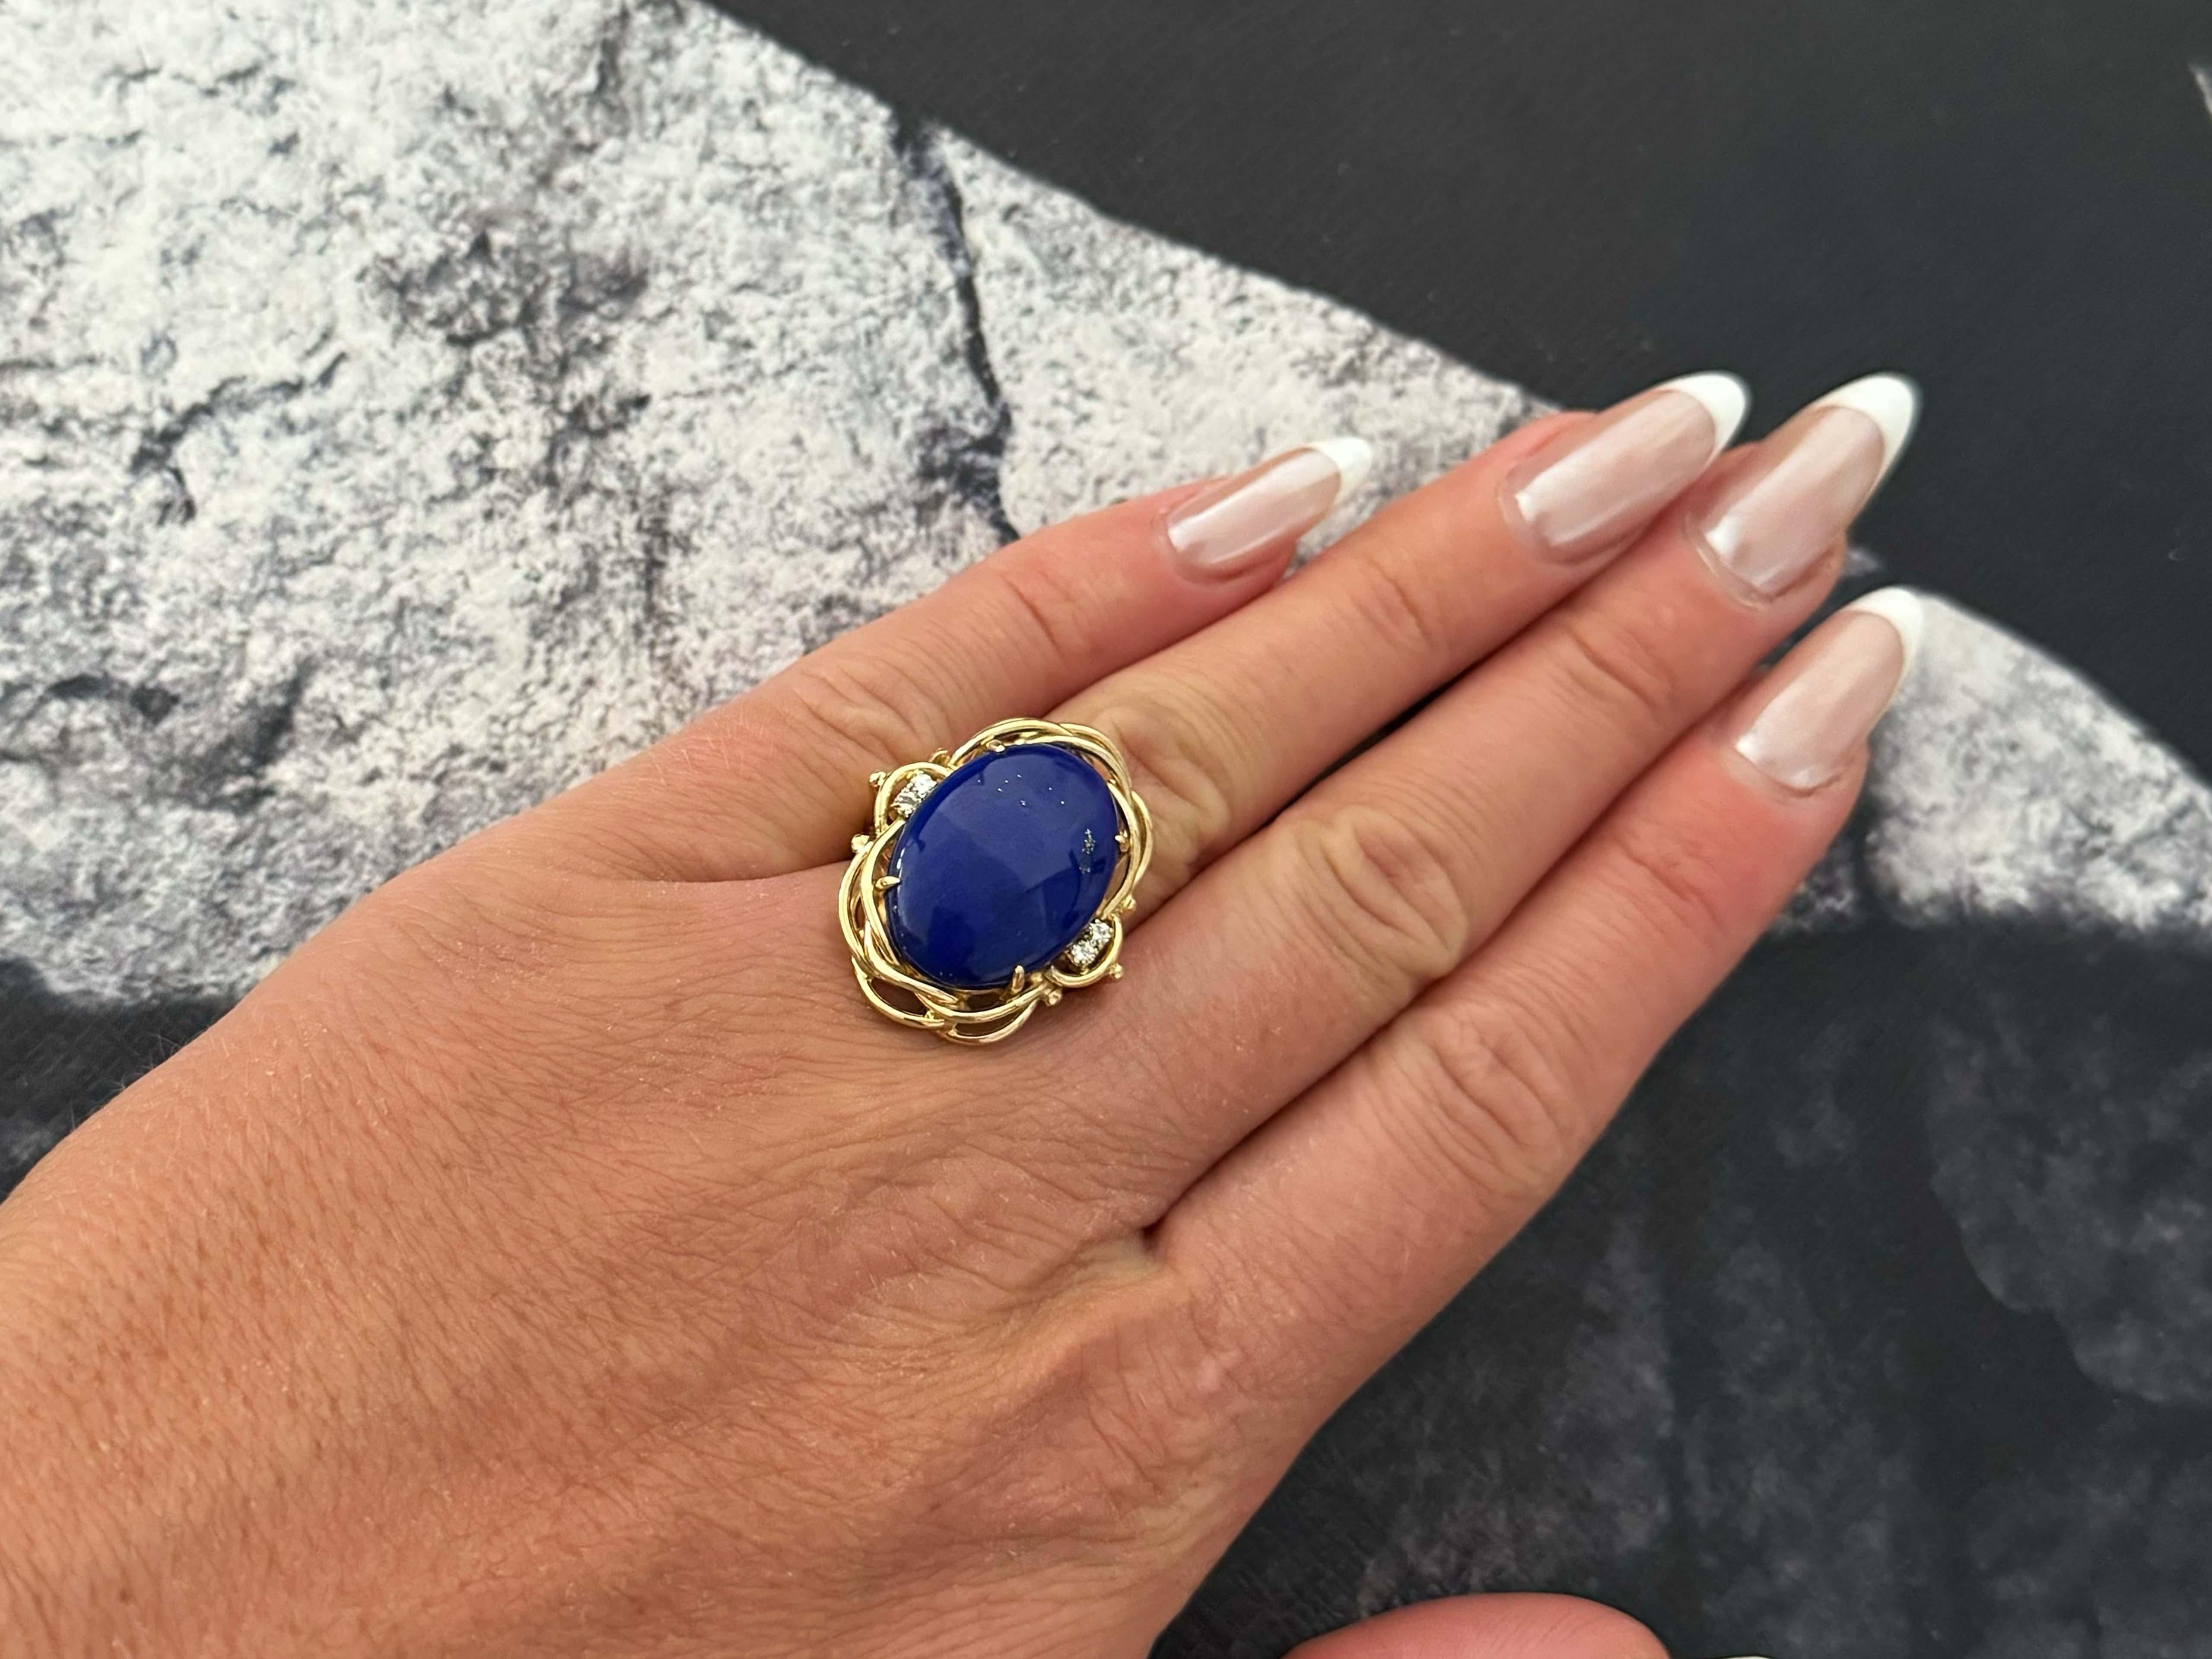 Spécifications de l'anneau :

Métal : Or jaune 14k

Poids total : 9,6 grammes

Pierre précieuse : Lapis Lazuli

Dimensions du lapis-lazuli : ~20.8 mm x  15.2 mm x 5.5 mm

Nombre de diamants : 4

Couleur du diamant : G-H

Poids en carats du diamant :